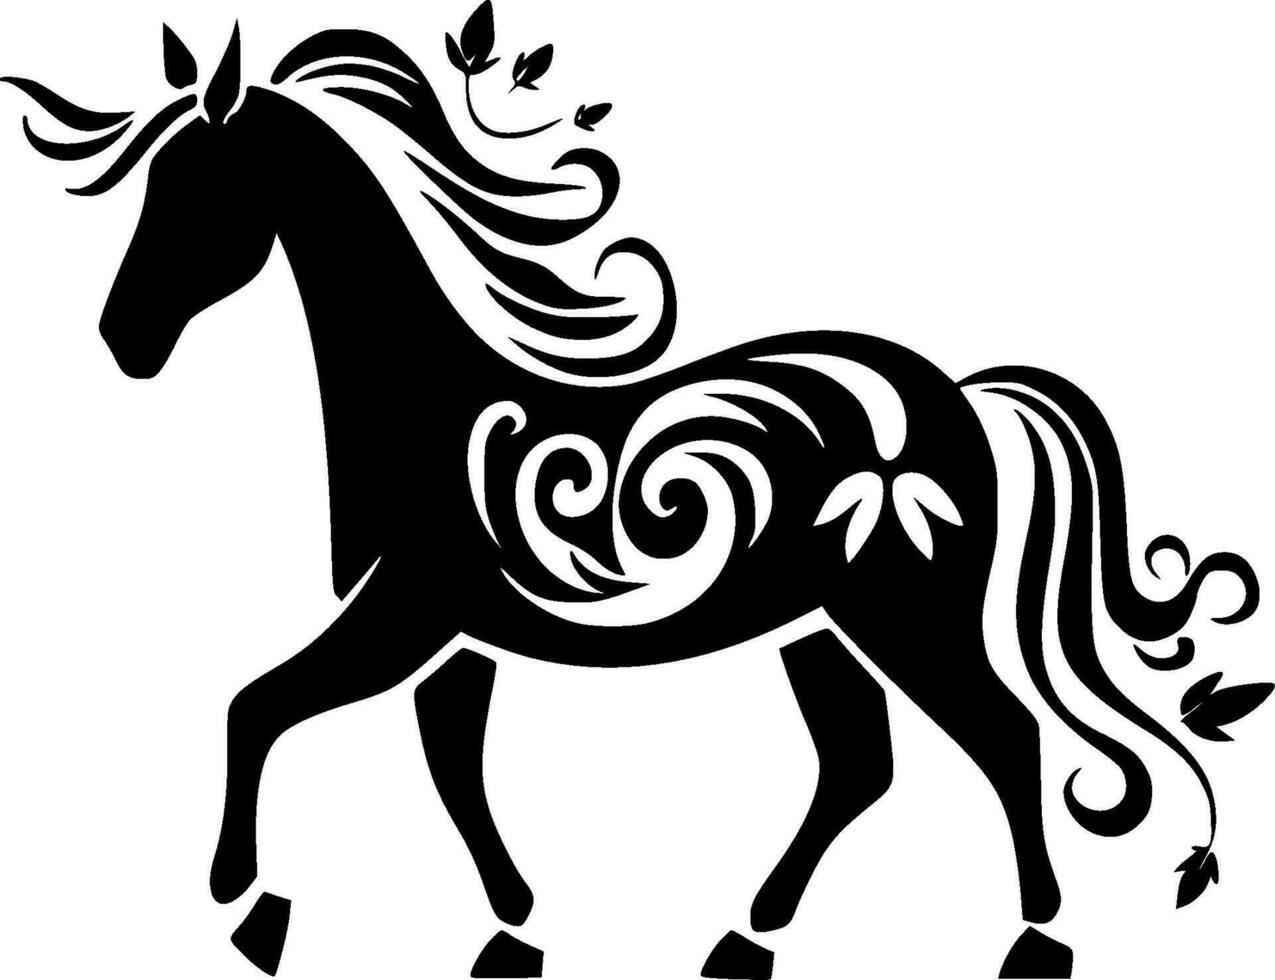 caballo, negro y blanco vector ilustración